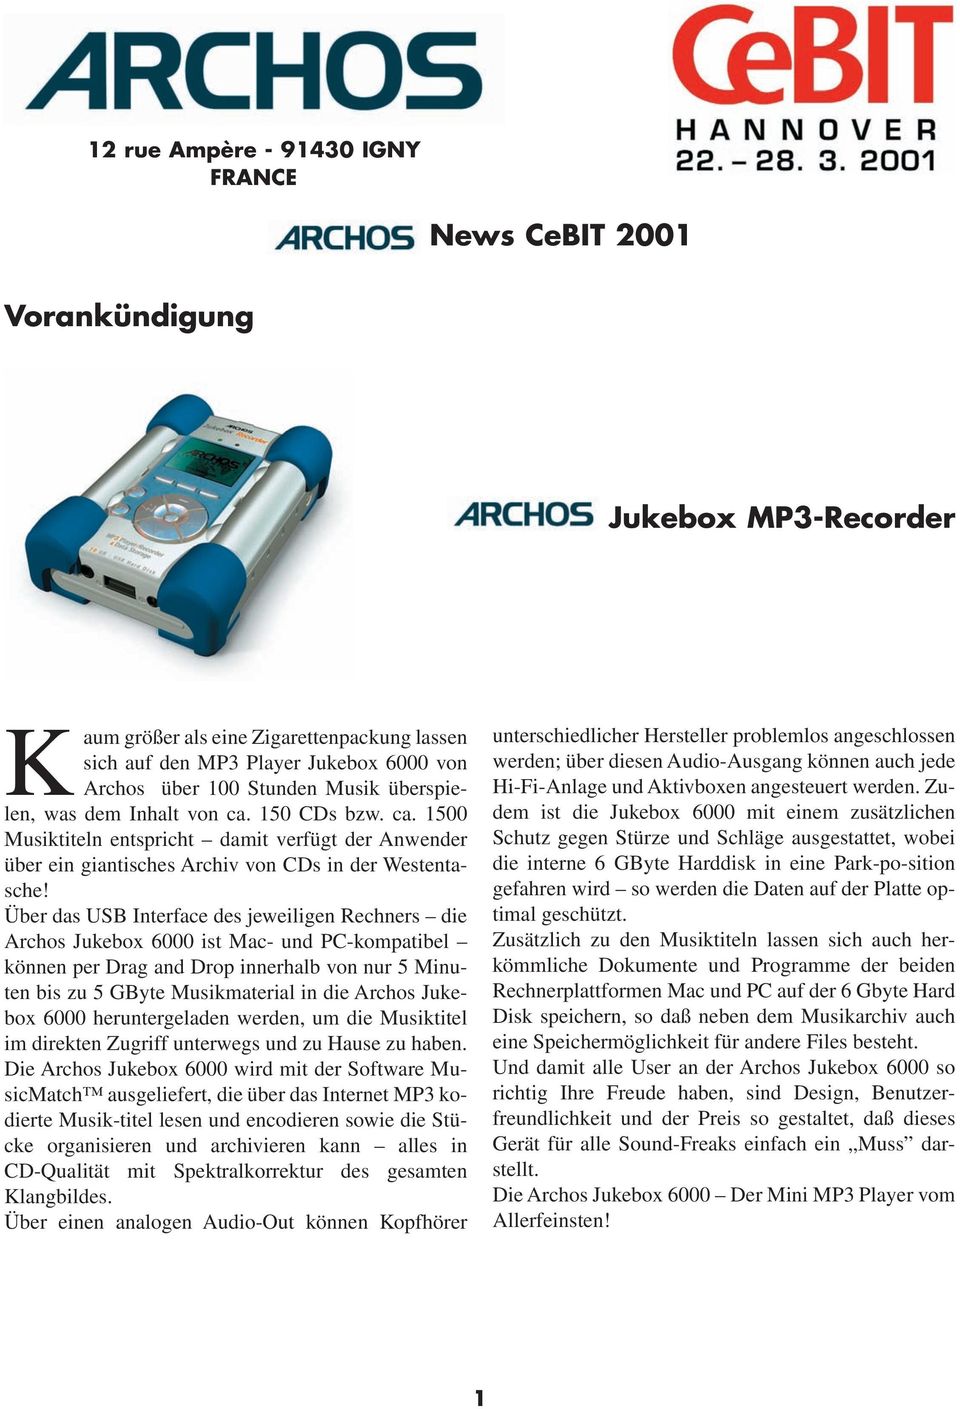 Über das USB Interface des jeweiligen Rechners die Archos Jukebox 6000 ist Mac- und PC-kompatibel können per Drag and Drop innerhalb von nur 5 Minuten bis zu 5 GByte Musikmaterial in die Archos